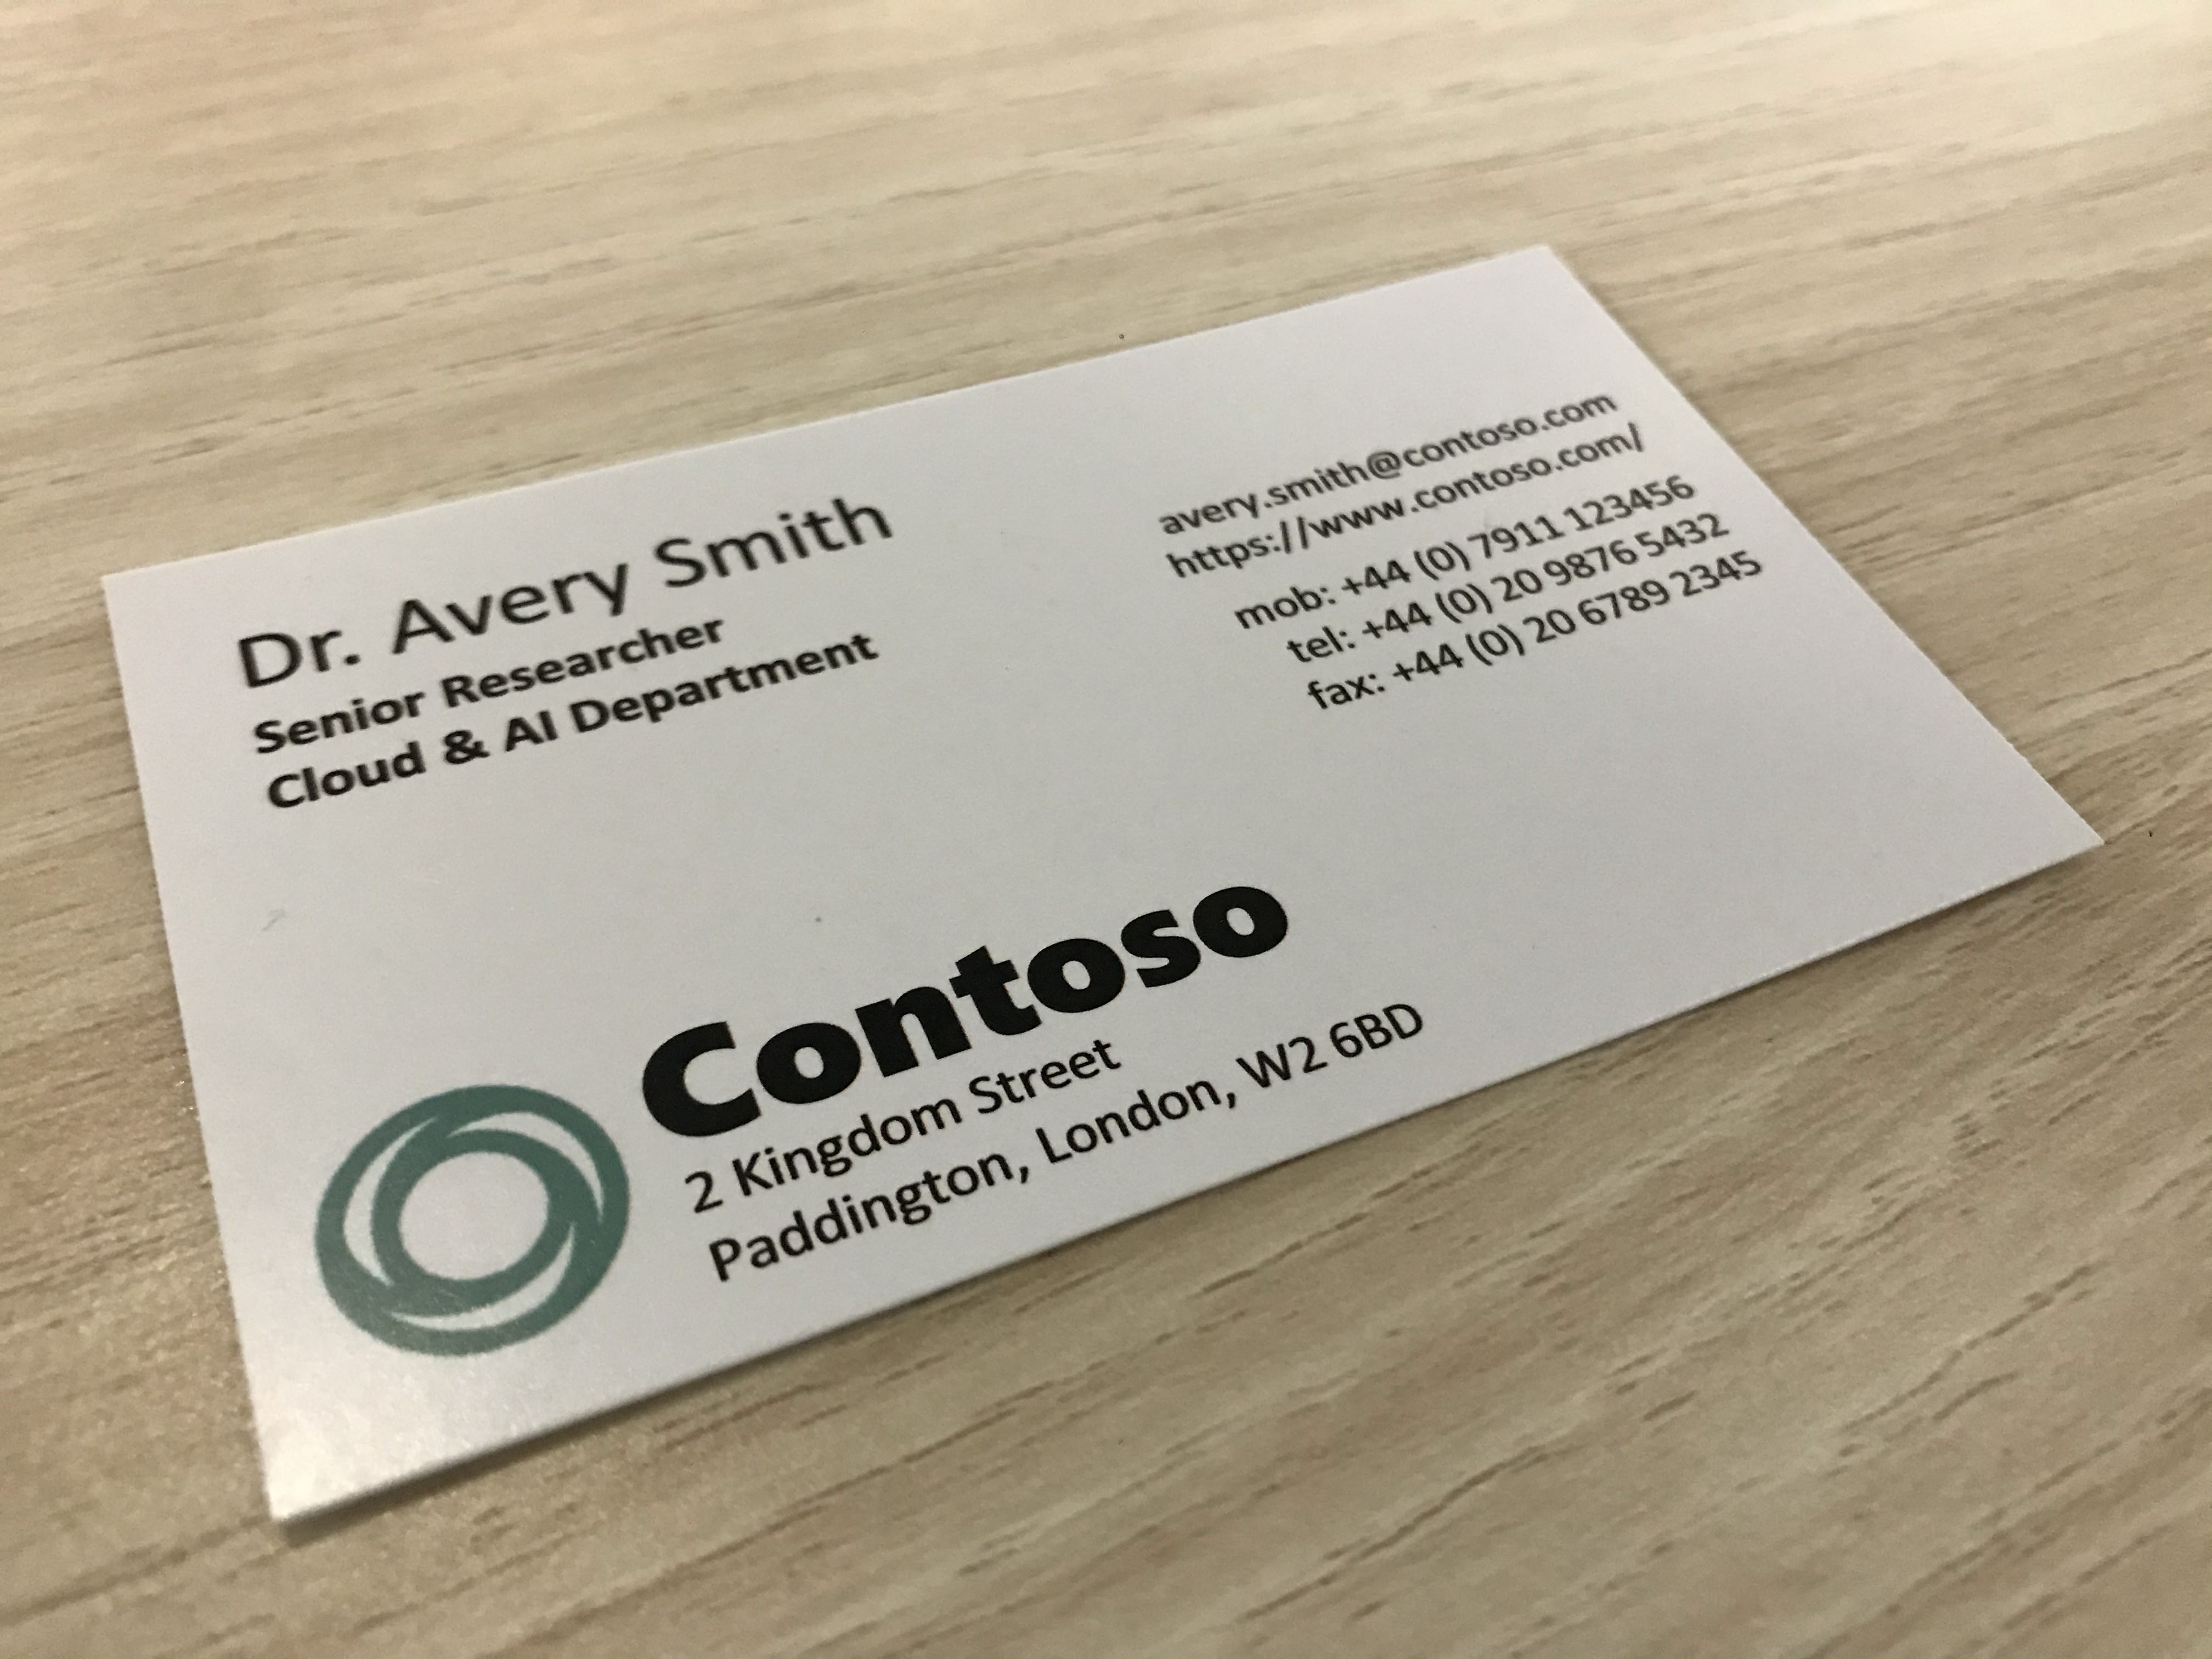 Фотография показывает визитную карточку компании, называемой Contoso.